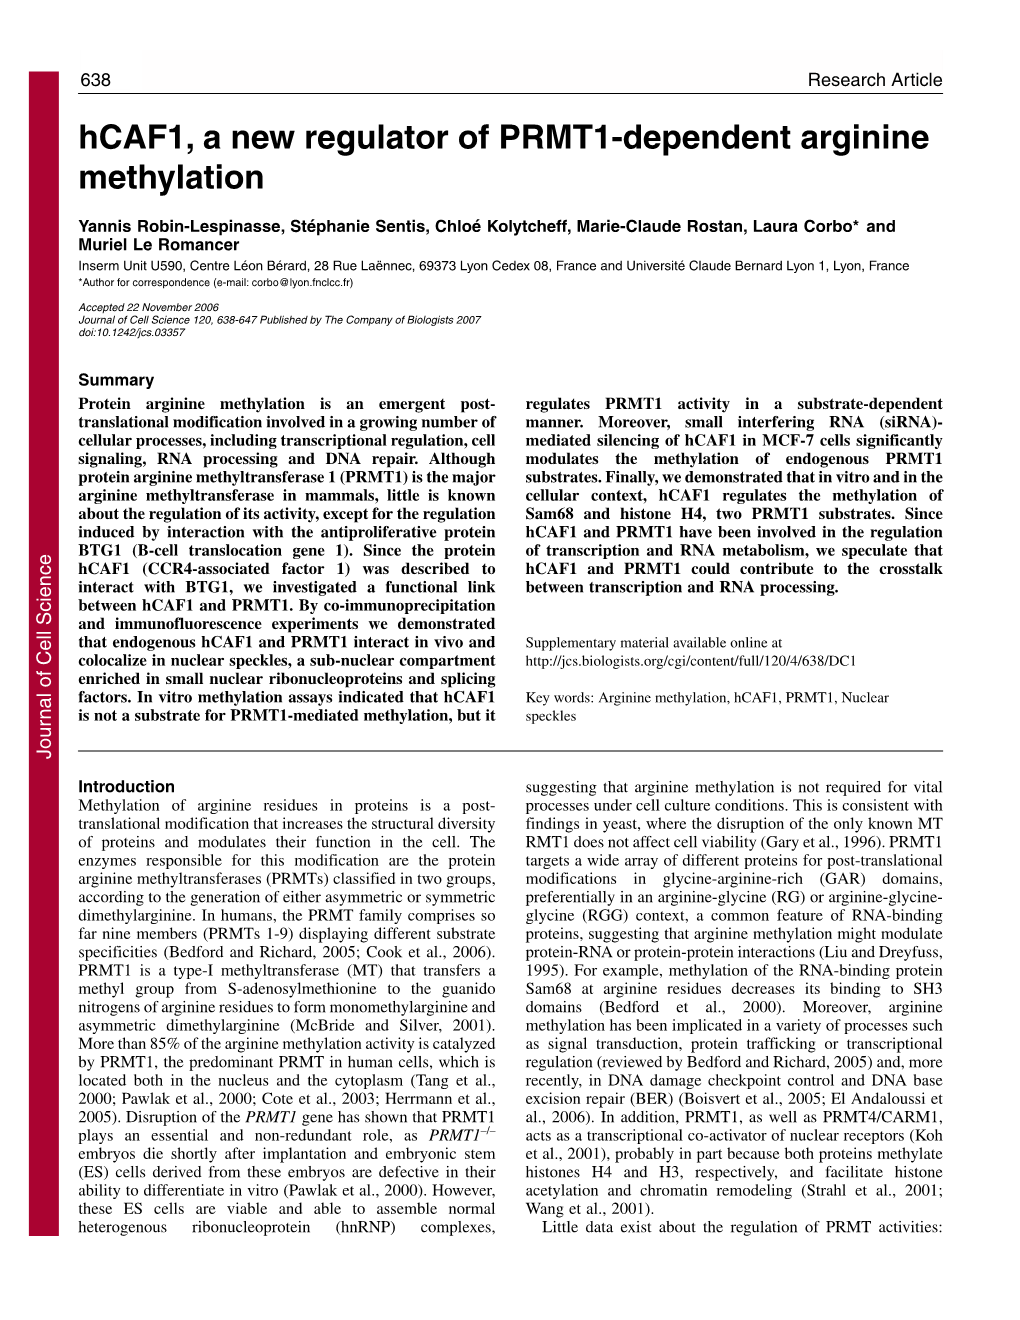 Hcaf1, a New Regulator of PRMT1-Dependent Arginine Methylation